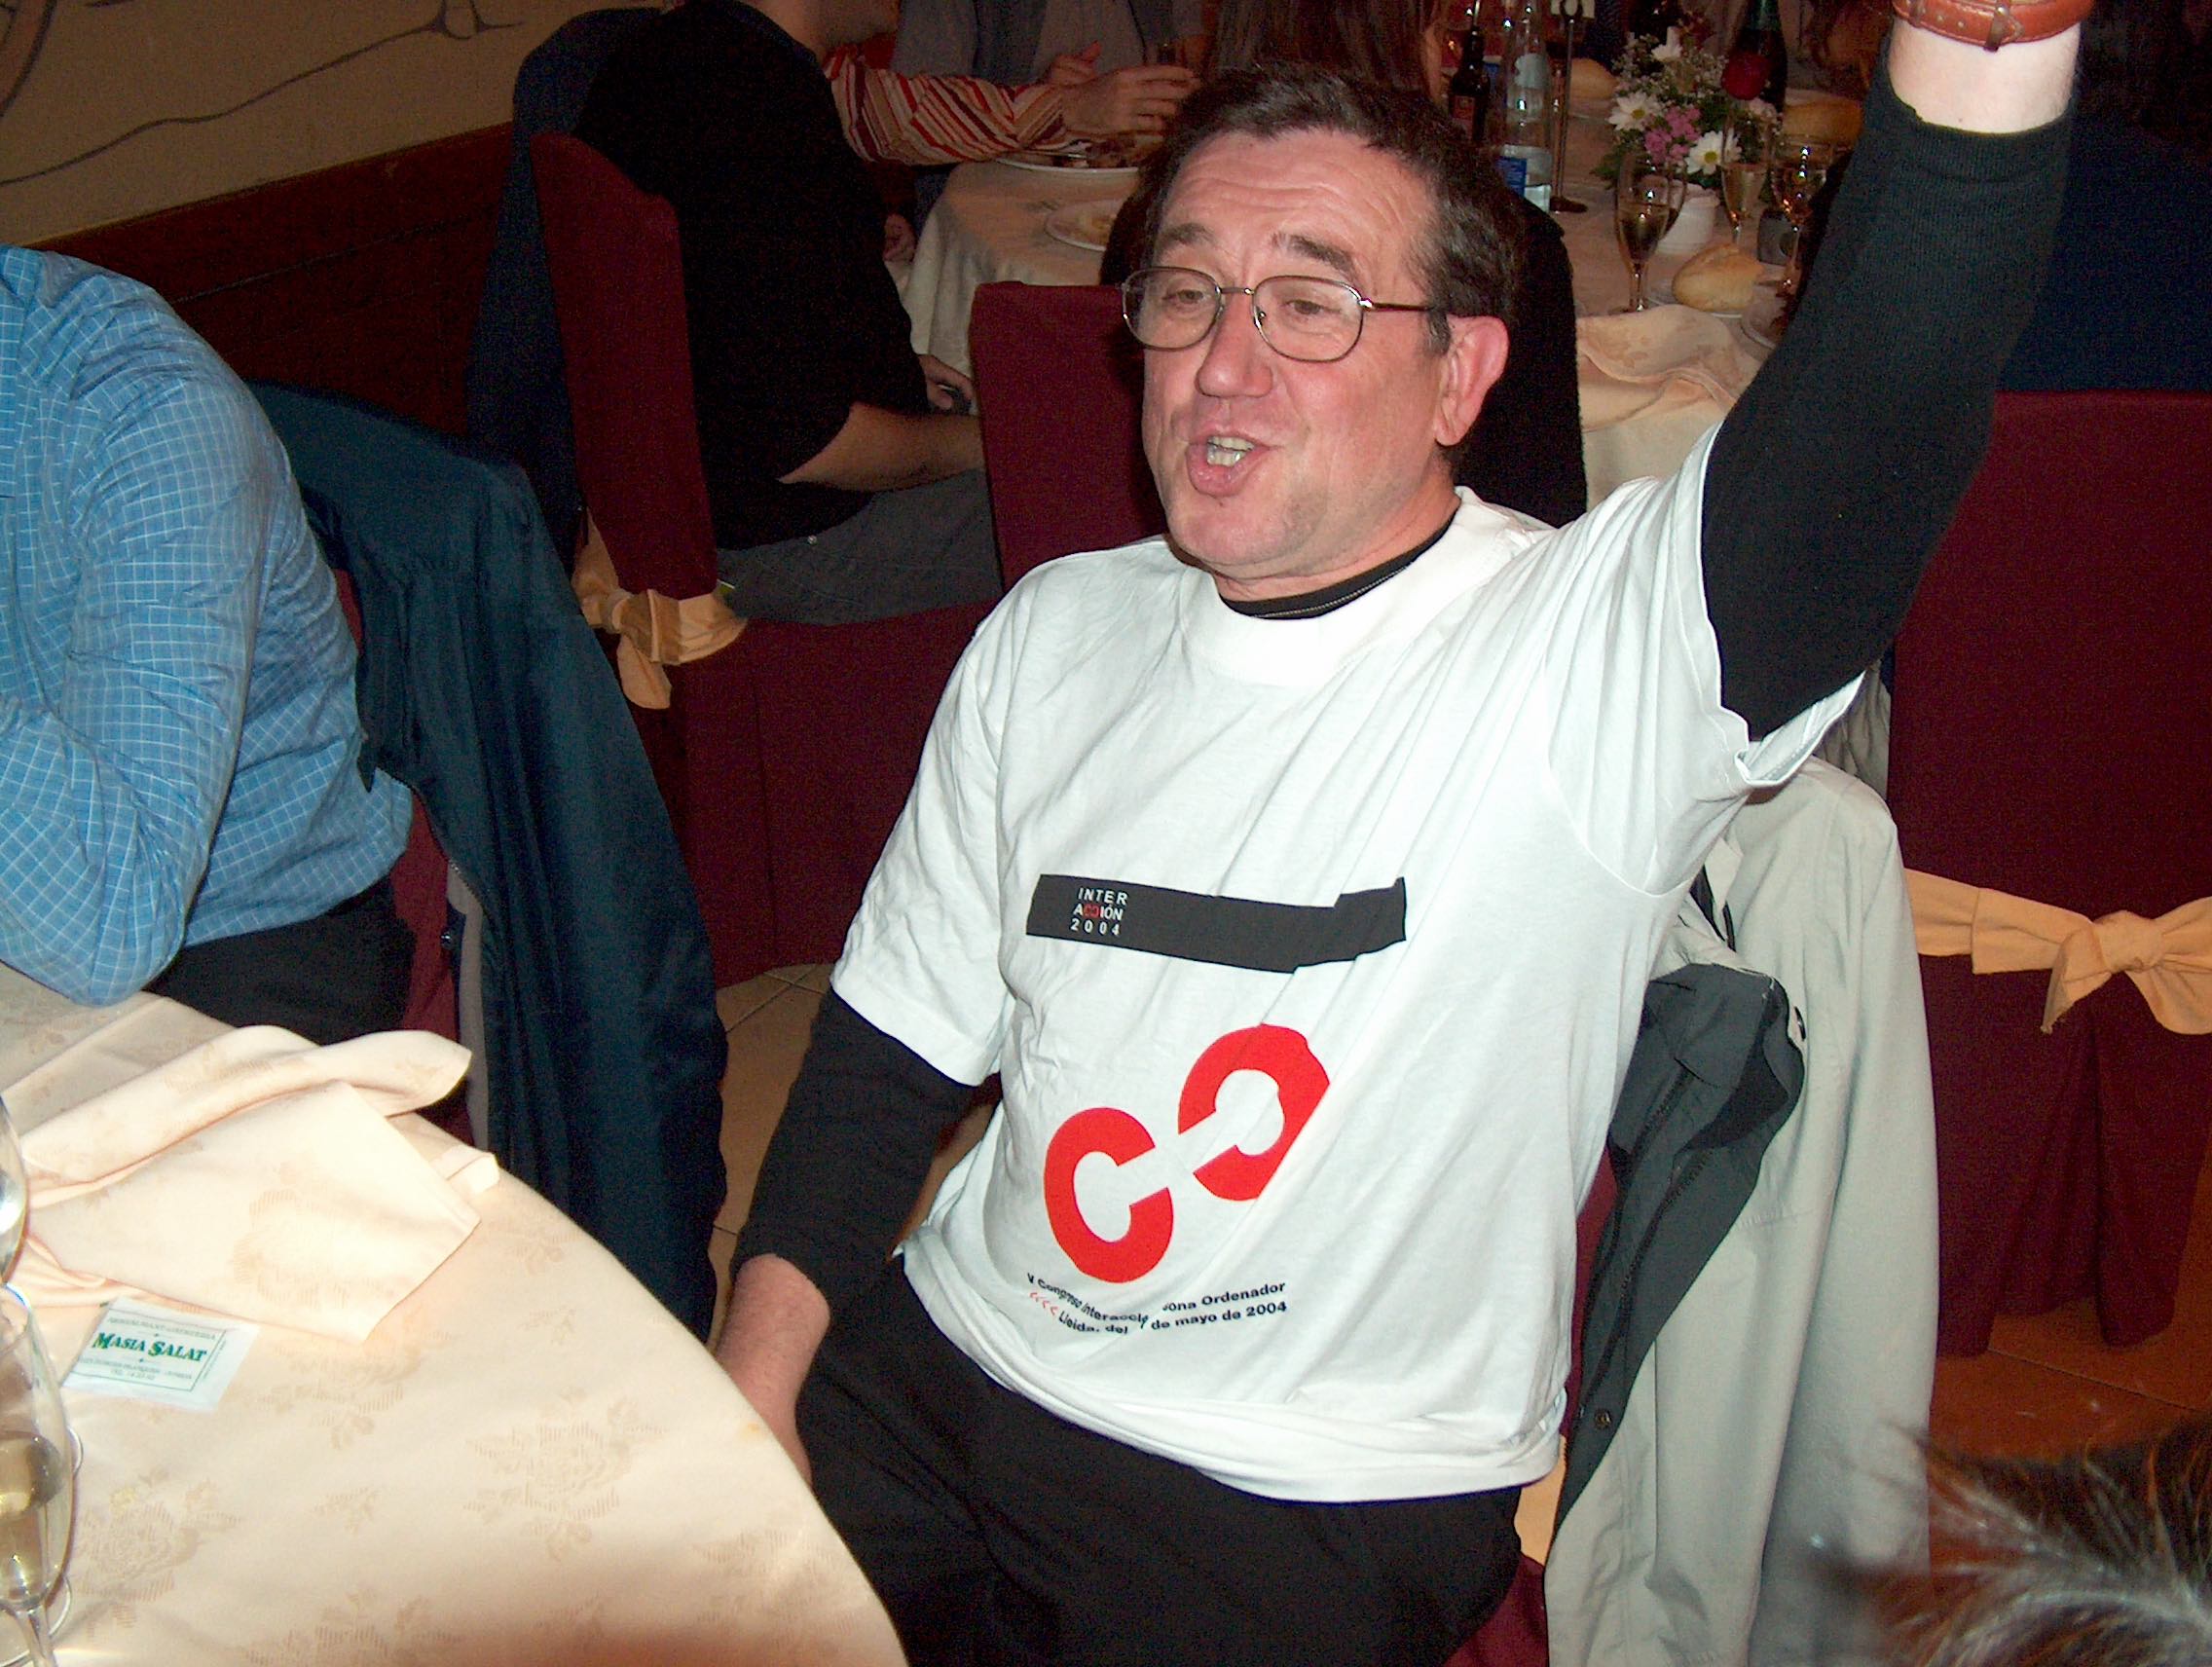 Jesús Lorés en la cena de gala del congreso Interacción 2004, llevando la camiseta del congreso.